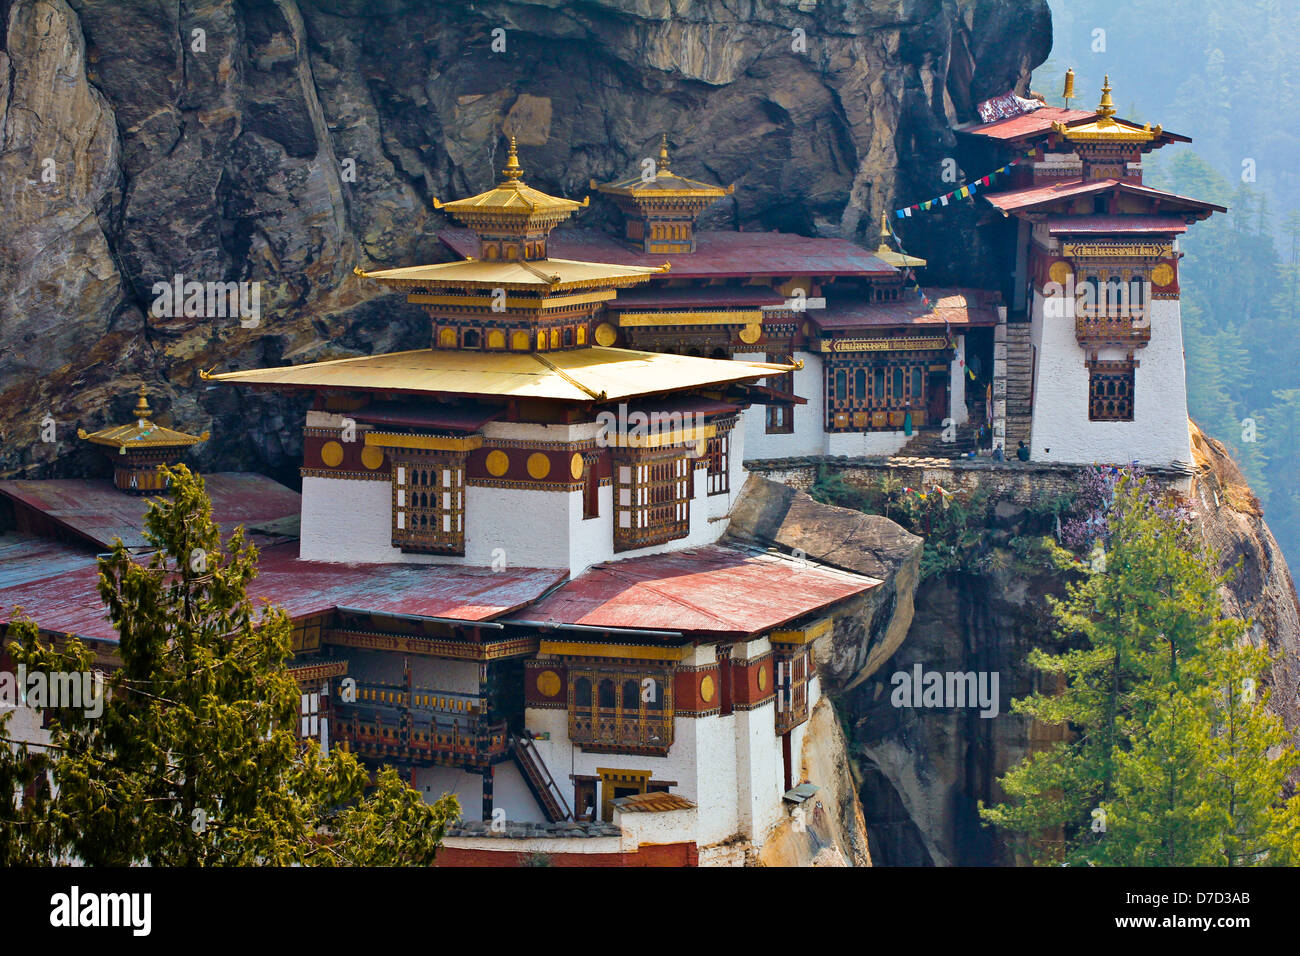 Taktsang Buddhist Monastery, Paro, Bhutan Stock Photo